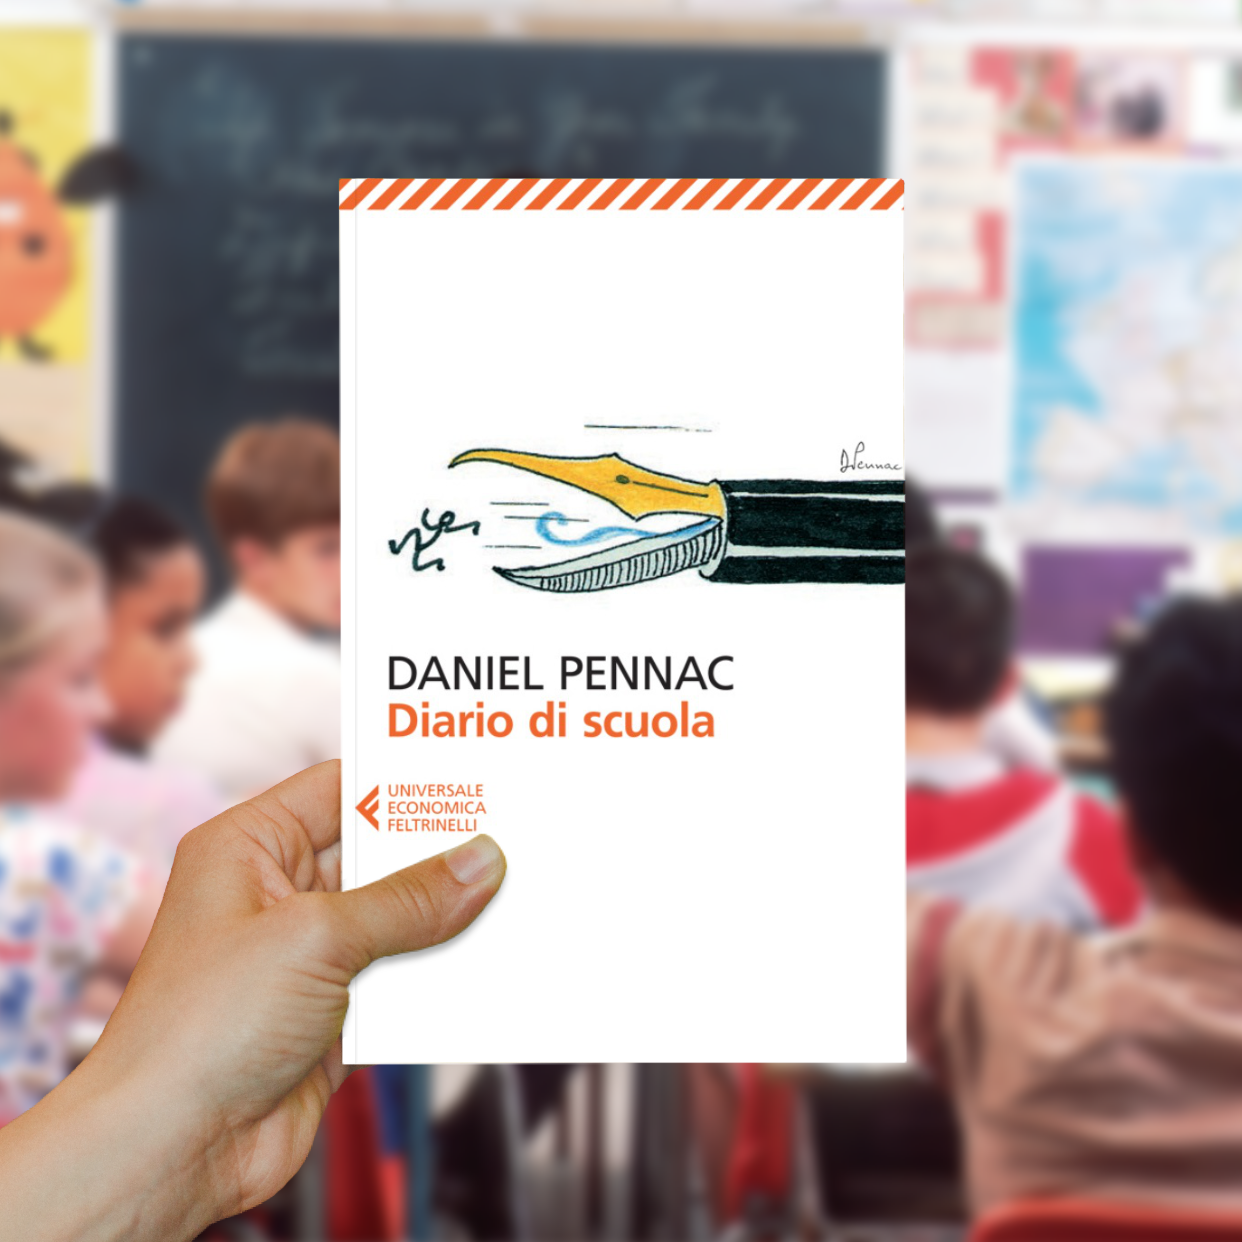 La scuola secondo Daniel Pennac: Diario di scuola